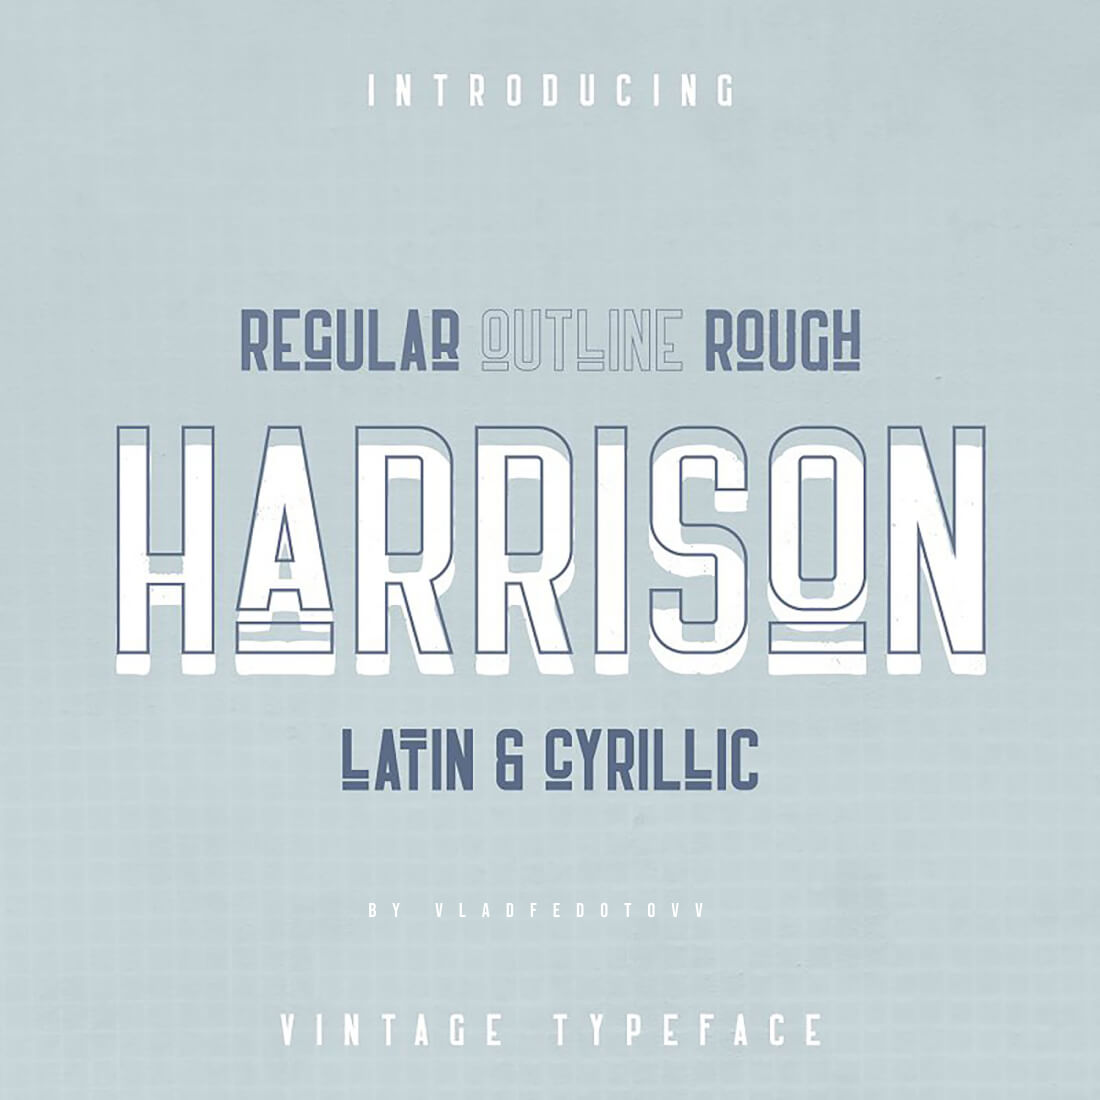 Retro Futuristic Font Harrison cover image.